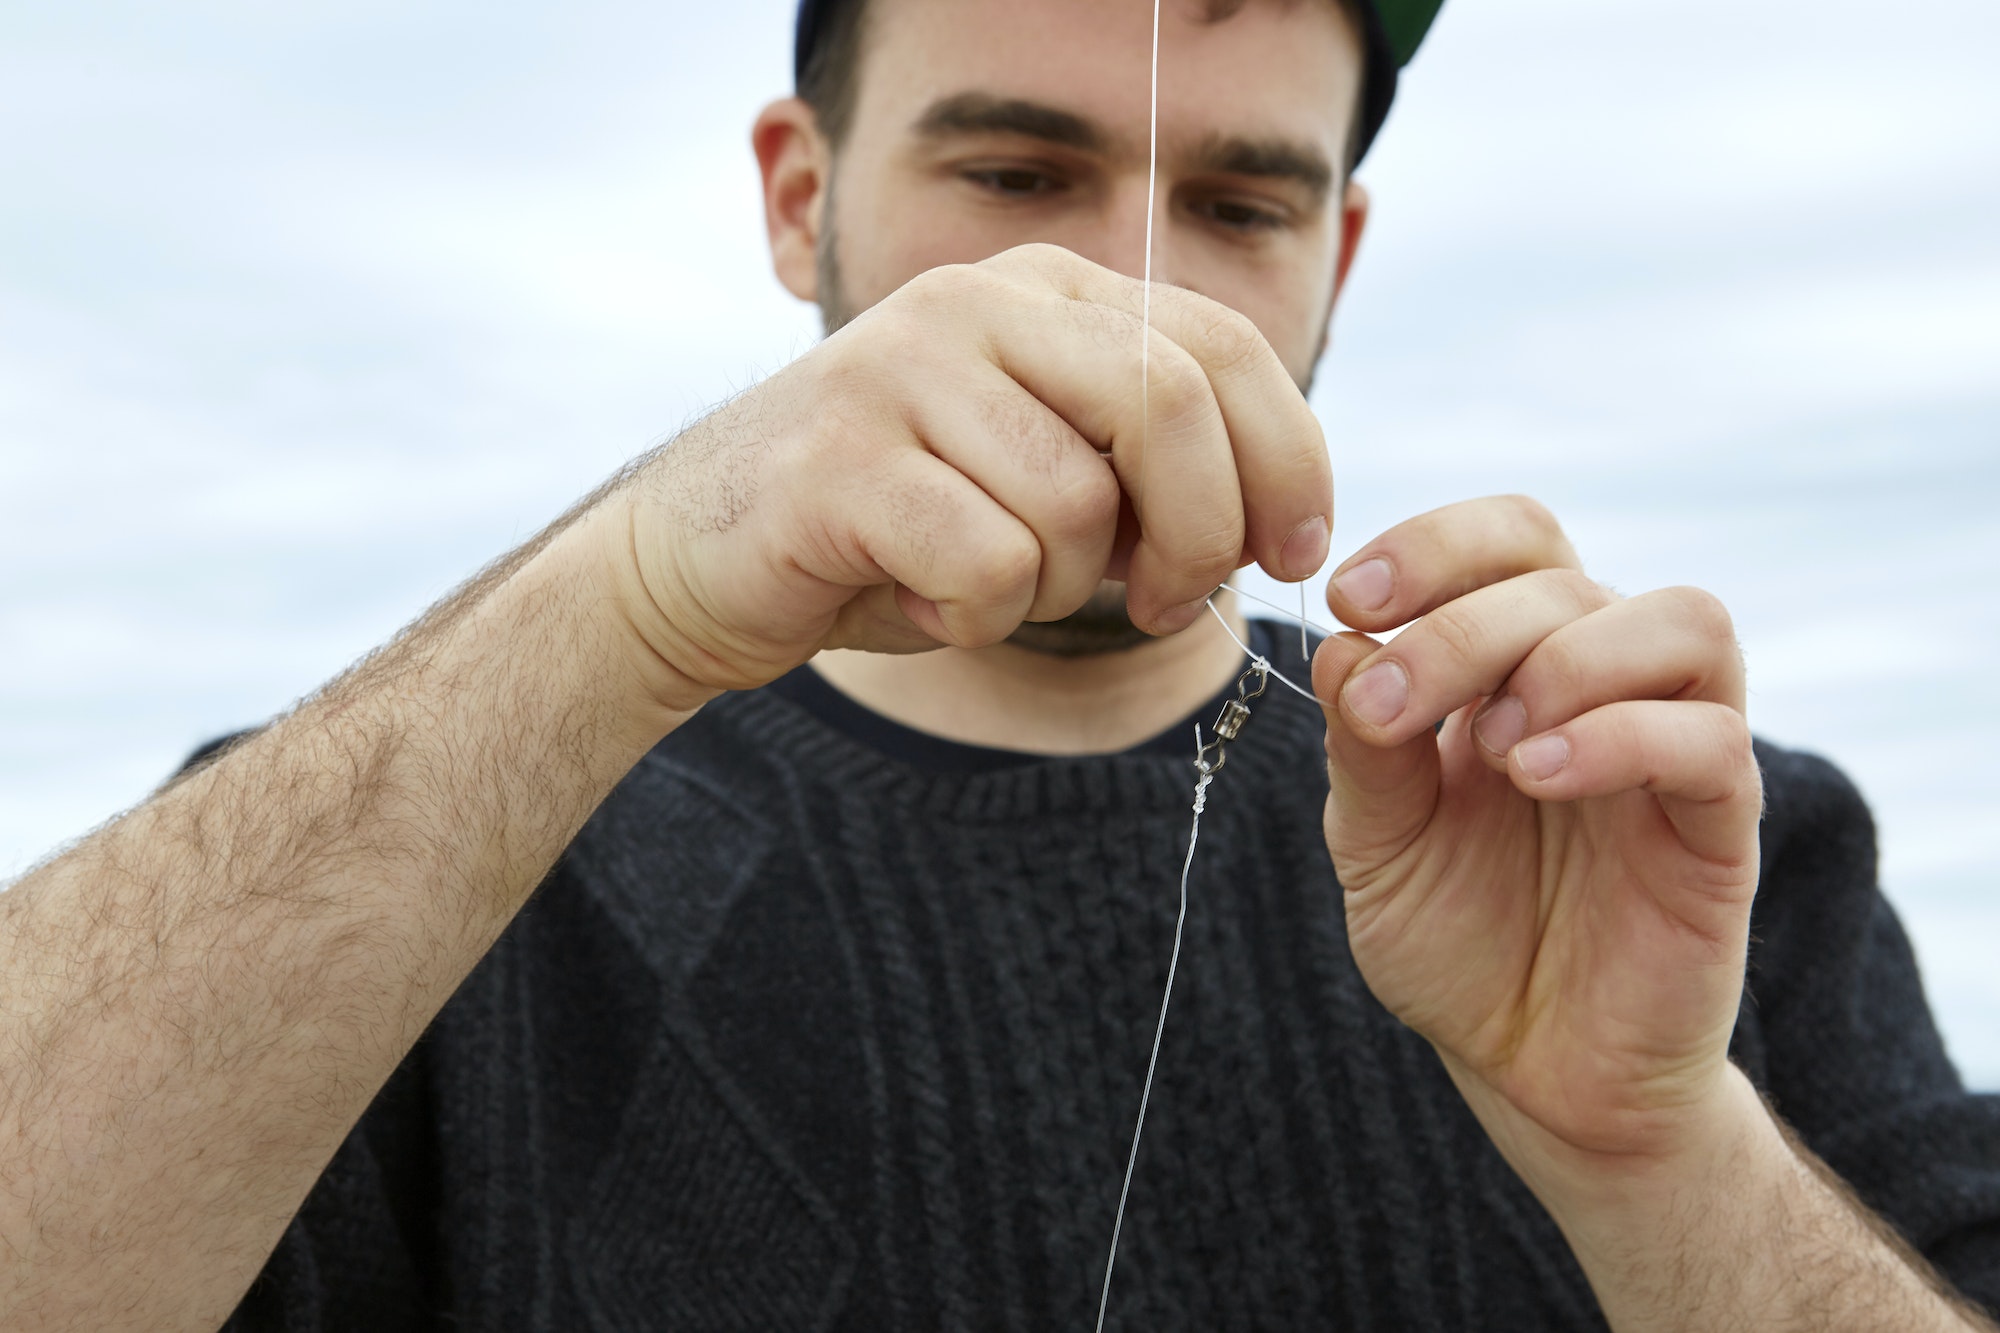 Young man attaching fishing hook to fishing line